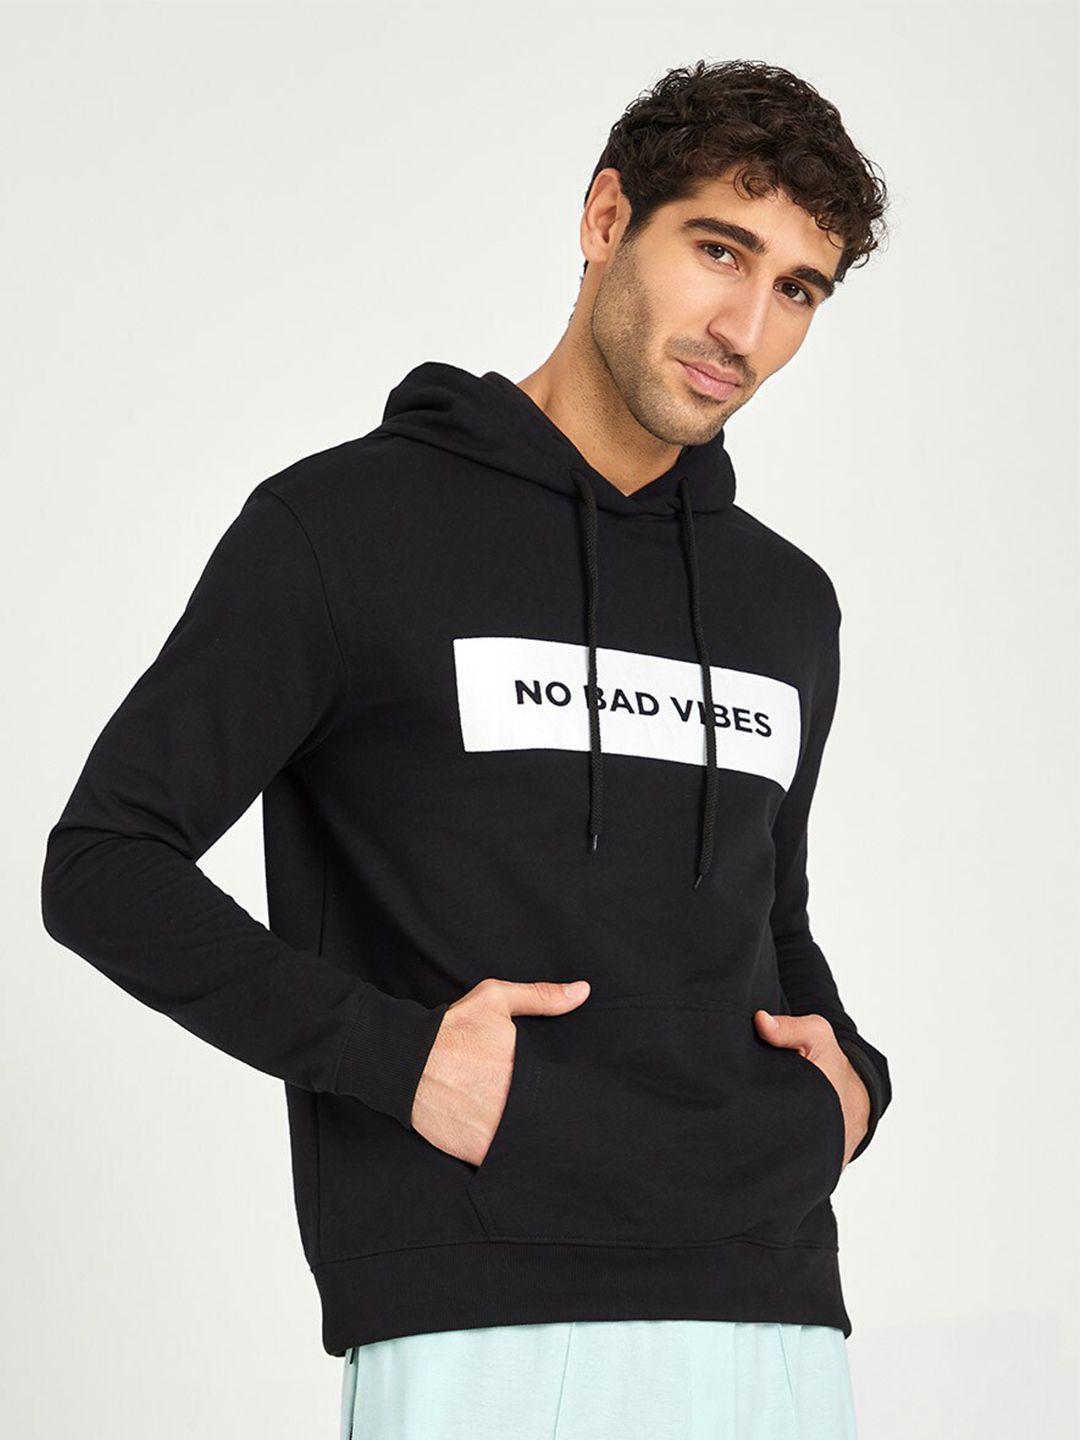 styli typography printed hooded sweatshirt